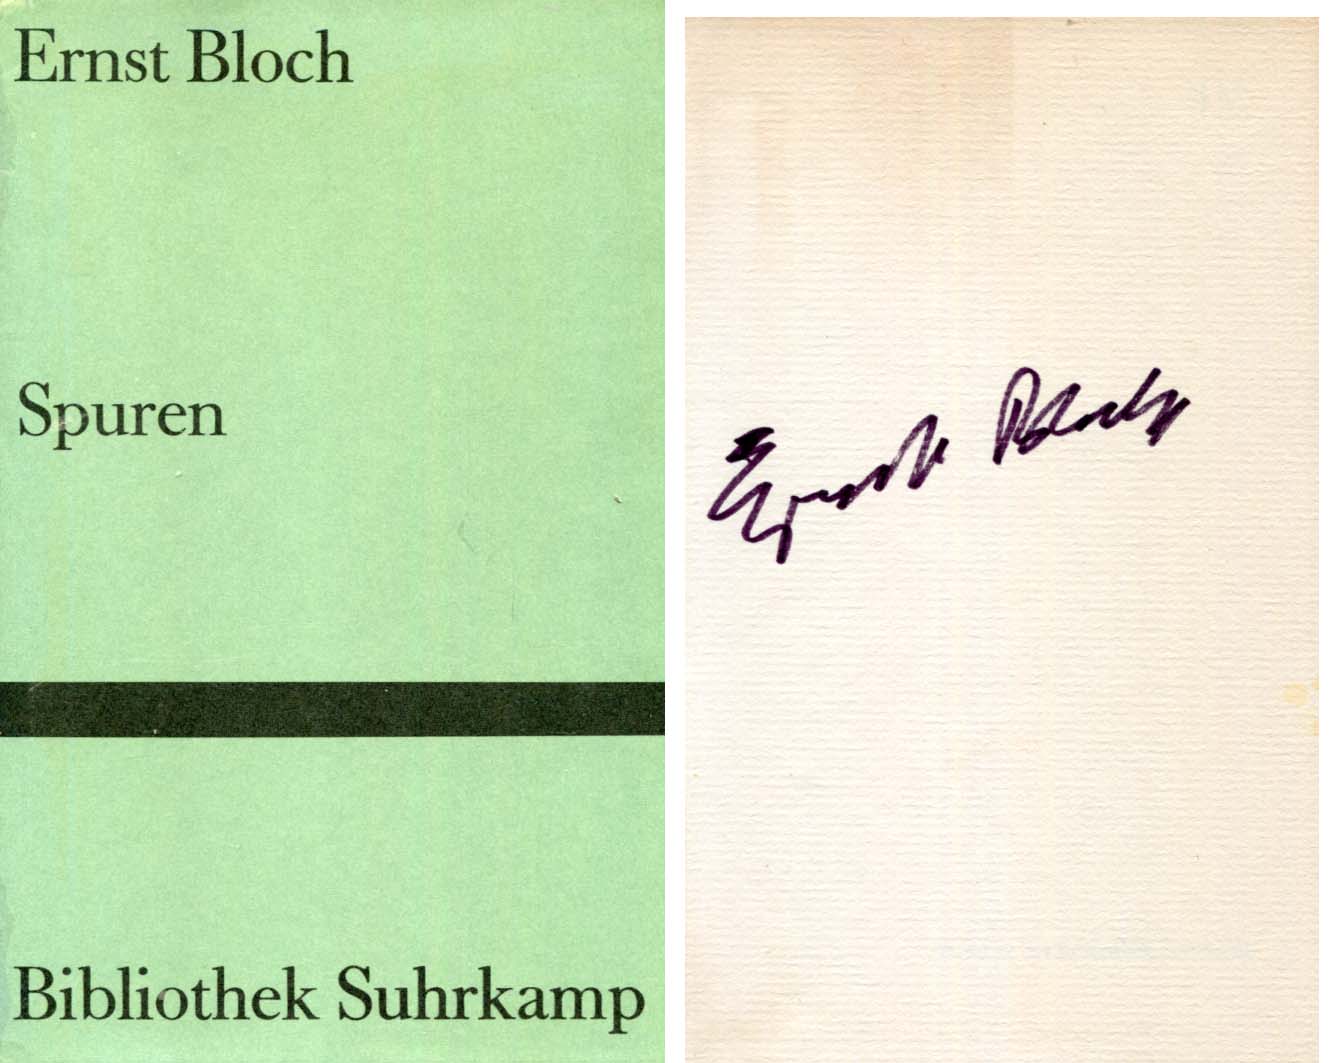 Ernst Bloch Autograph Autogramm | ID 7855657910421